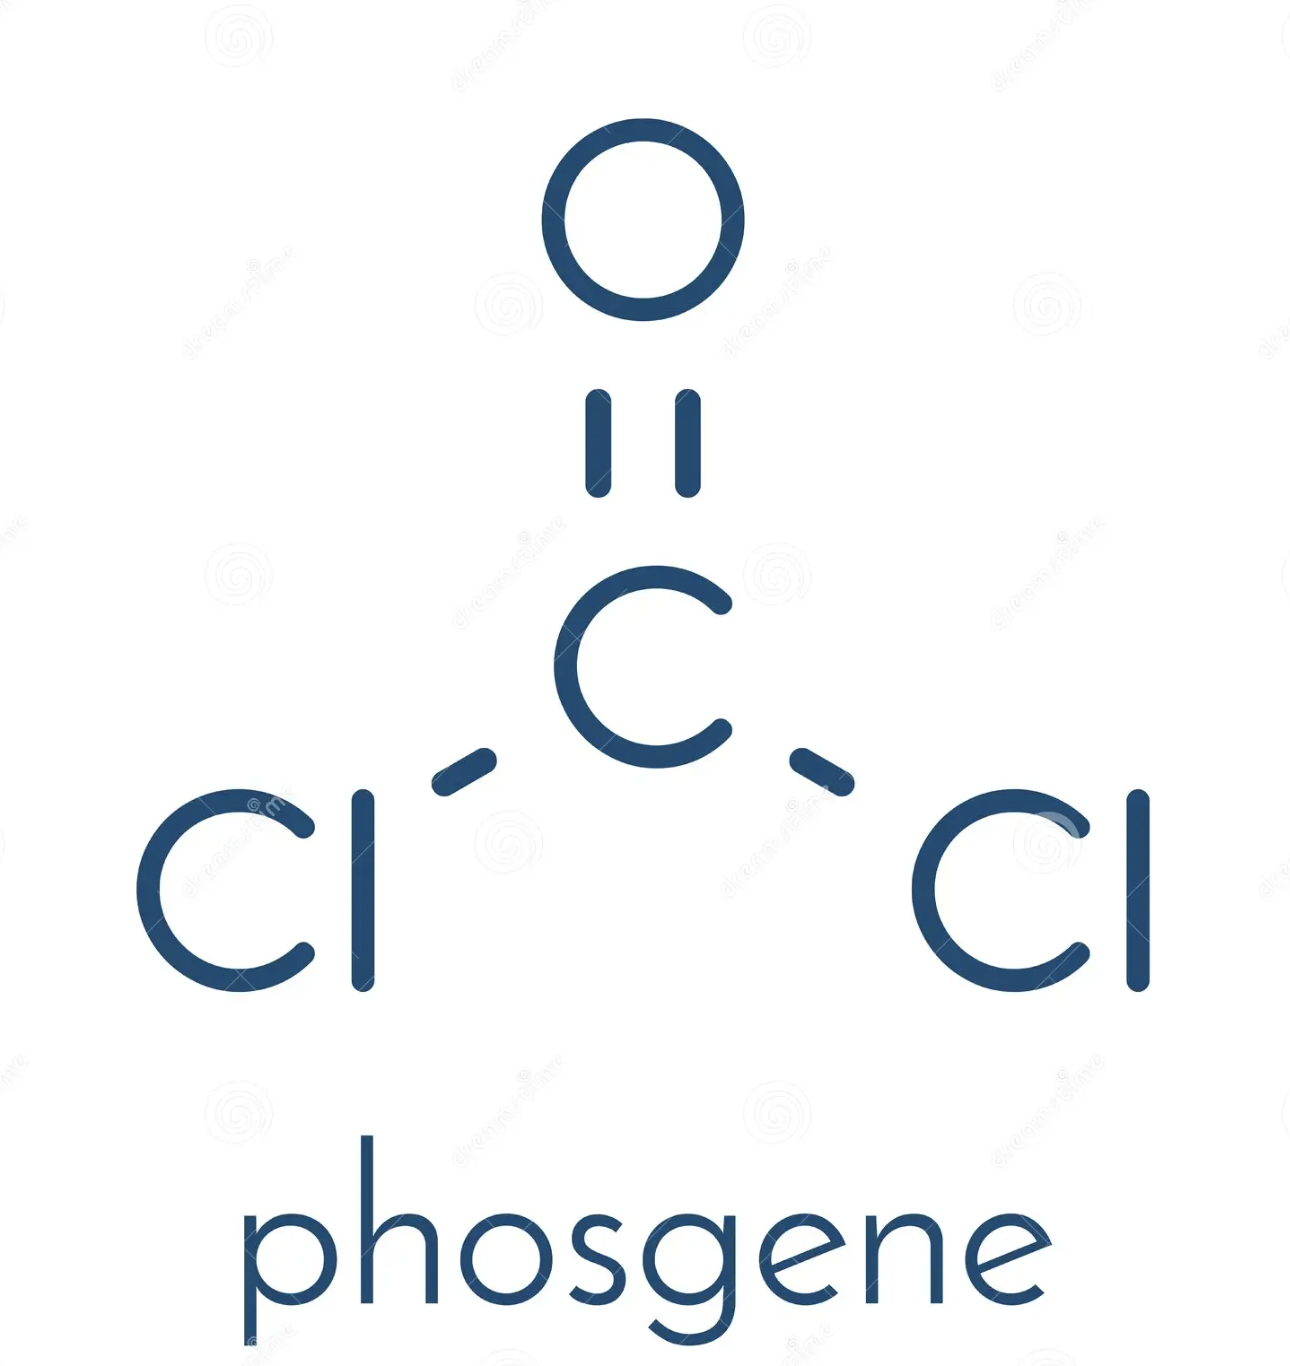  Phosgene là gì và ứng dụng của phosgene